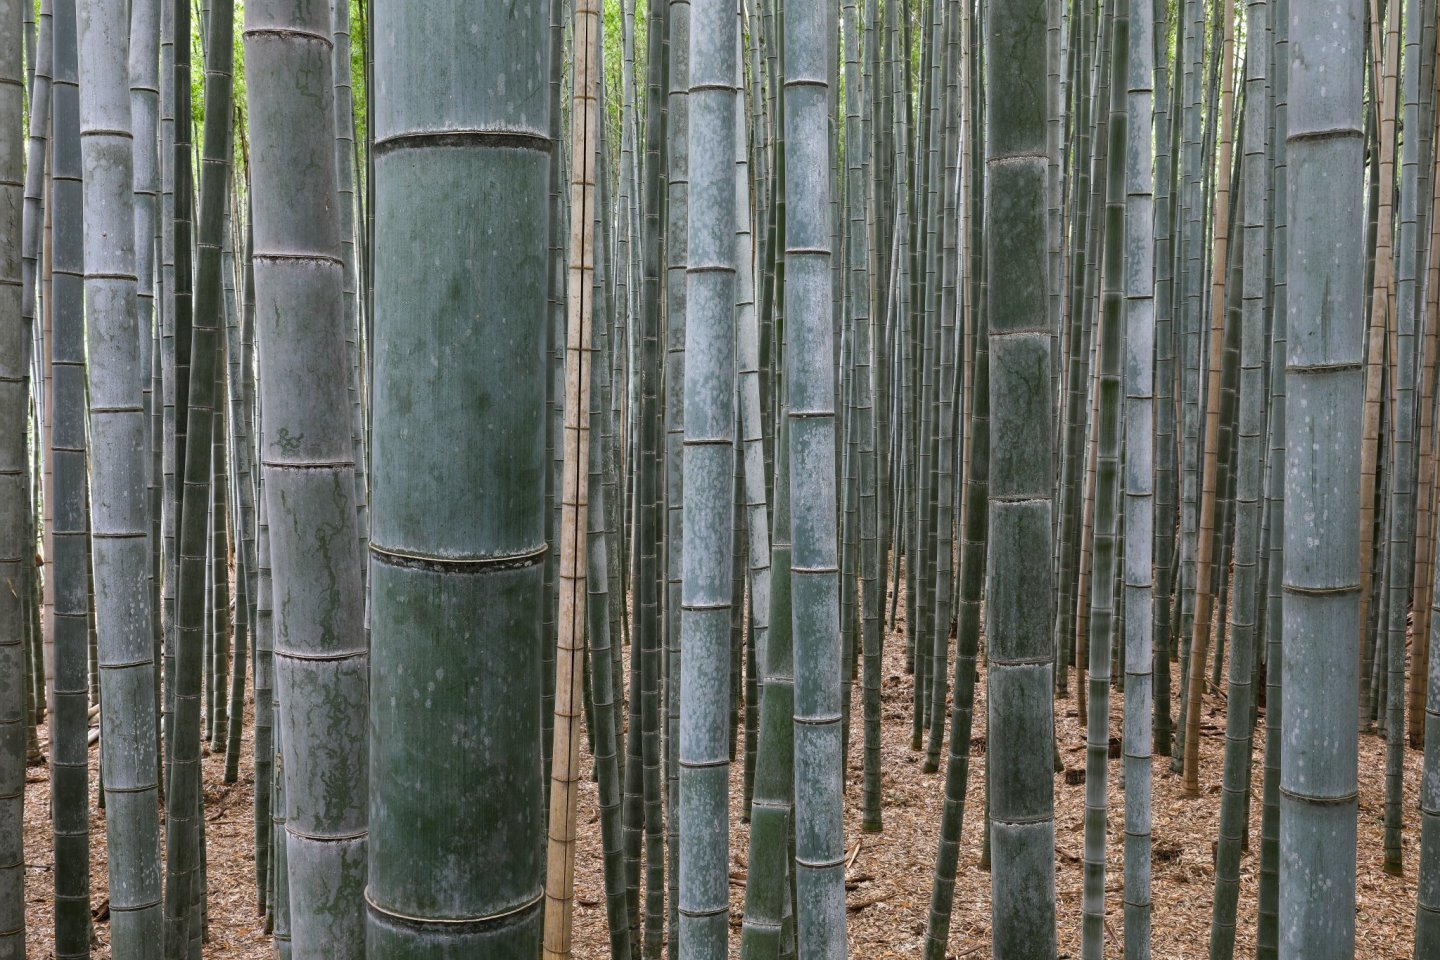 In many ways, bamboo symbolizes the Japanese aesthetic